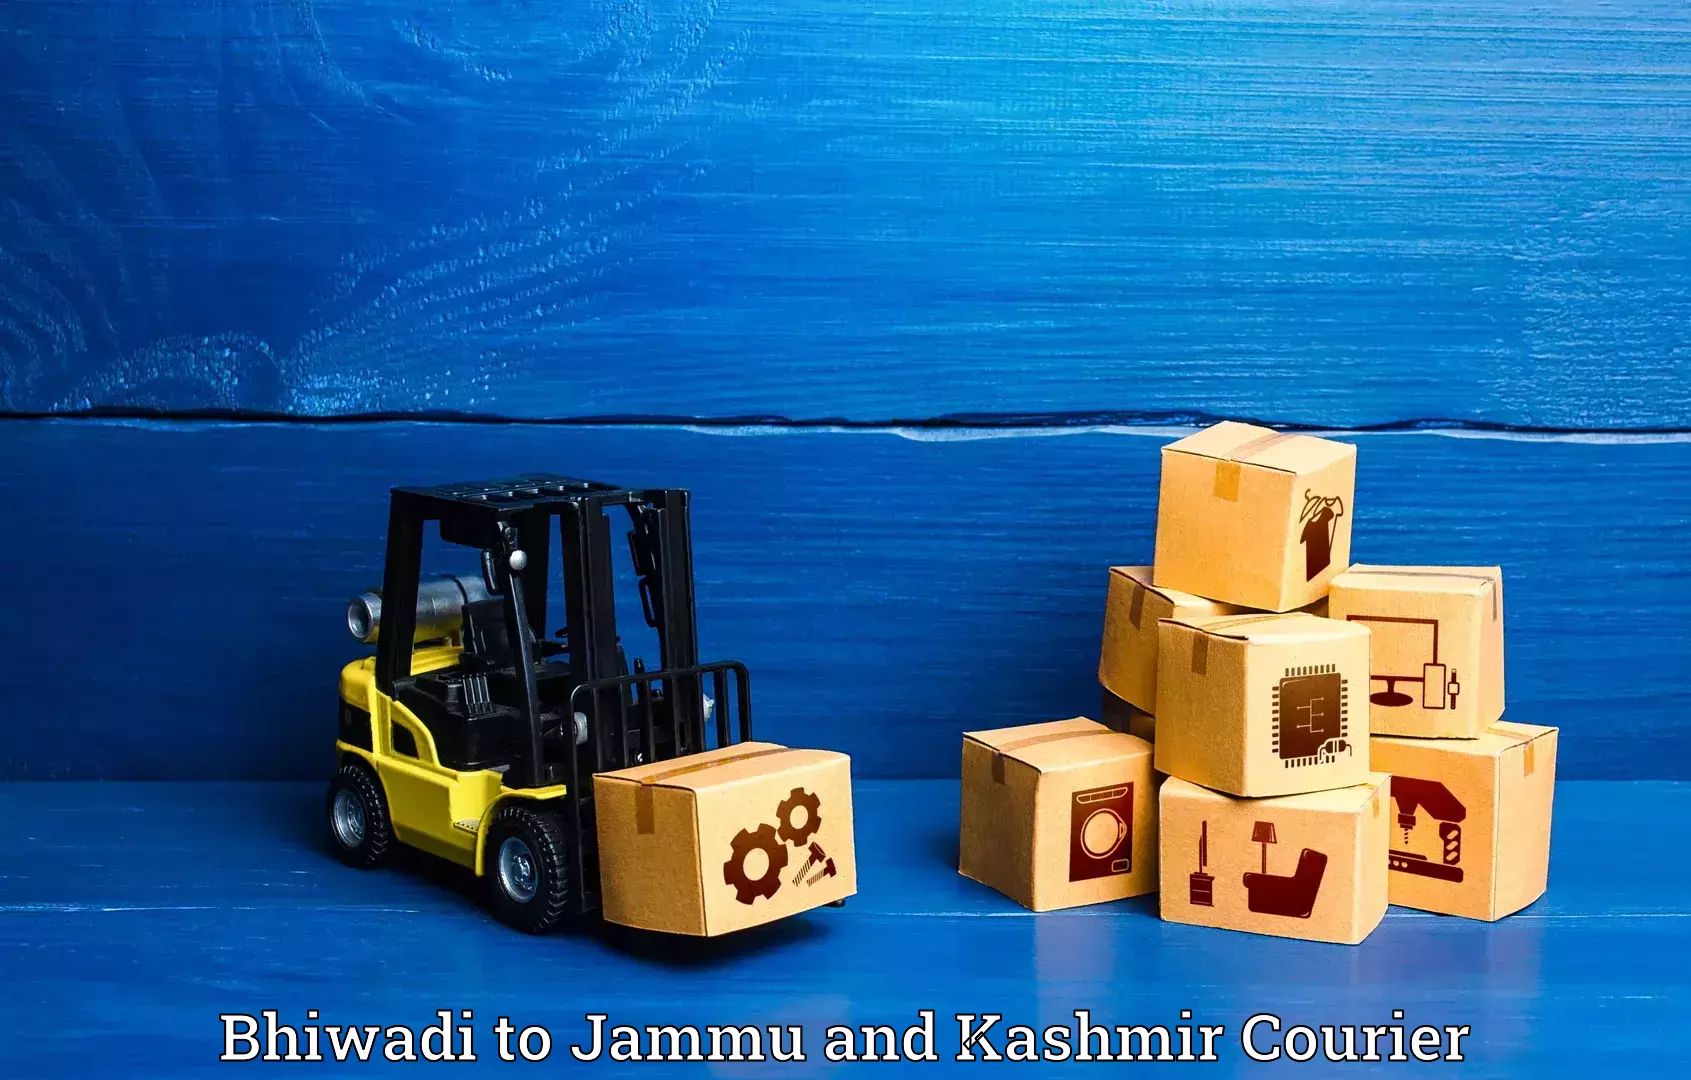 Luggage shipping service Bhiwadi to Anantnag